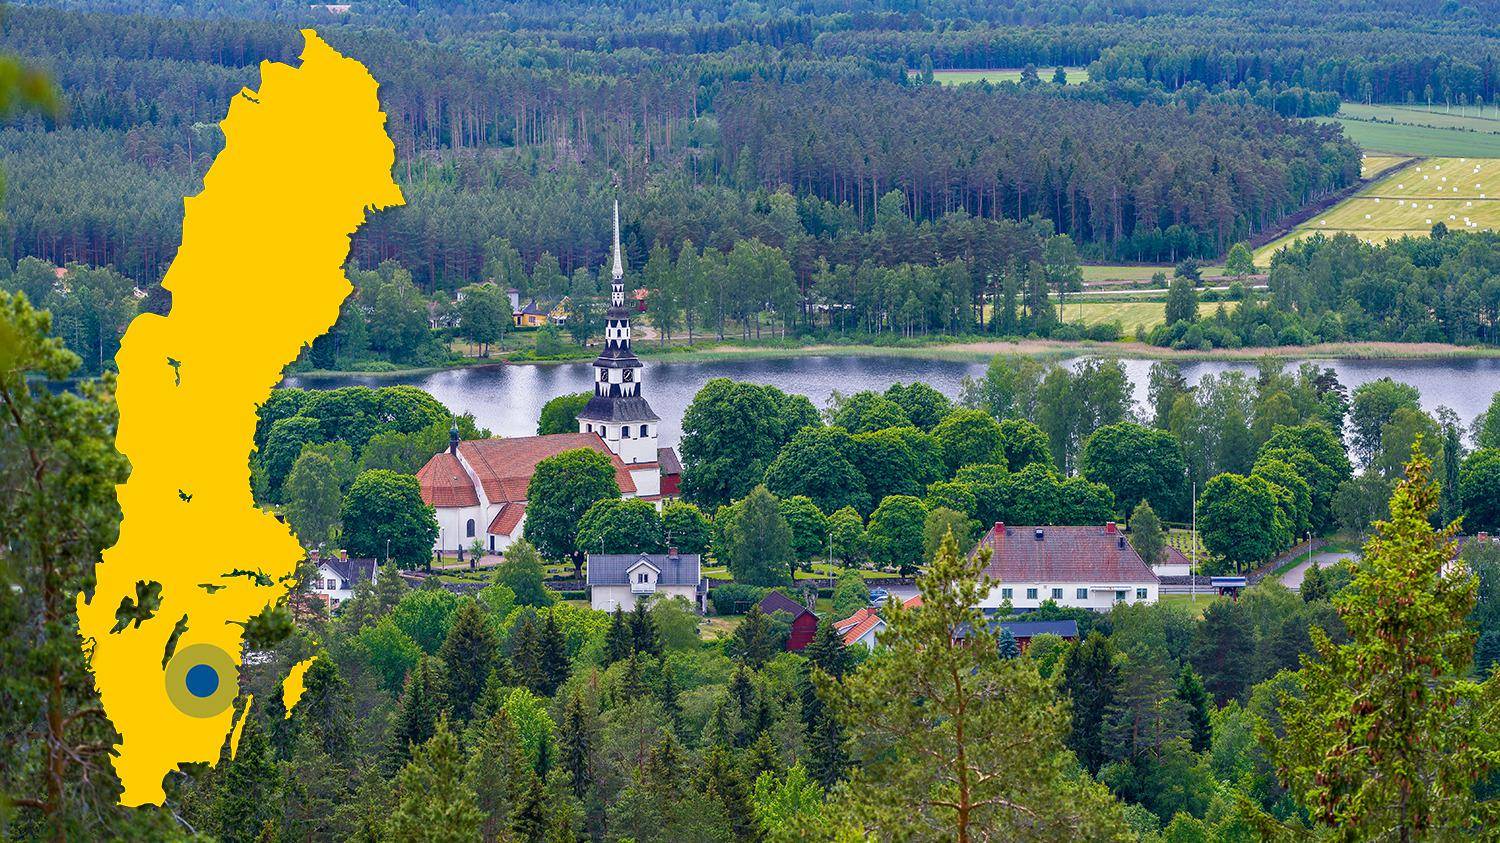 Eine weiße Kirche und ein paar Häuser sind umgeben von grünen Bäumen, Feldern und einem See. Es gibt eine gelbe Karte von Schweden mit einem blauen Punkt, der Ingatorp markiert.